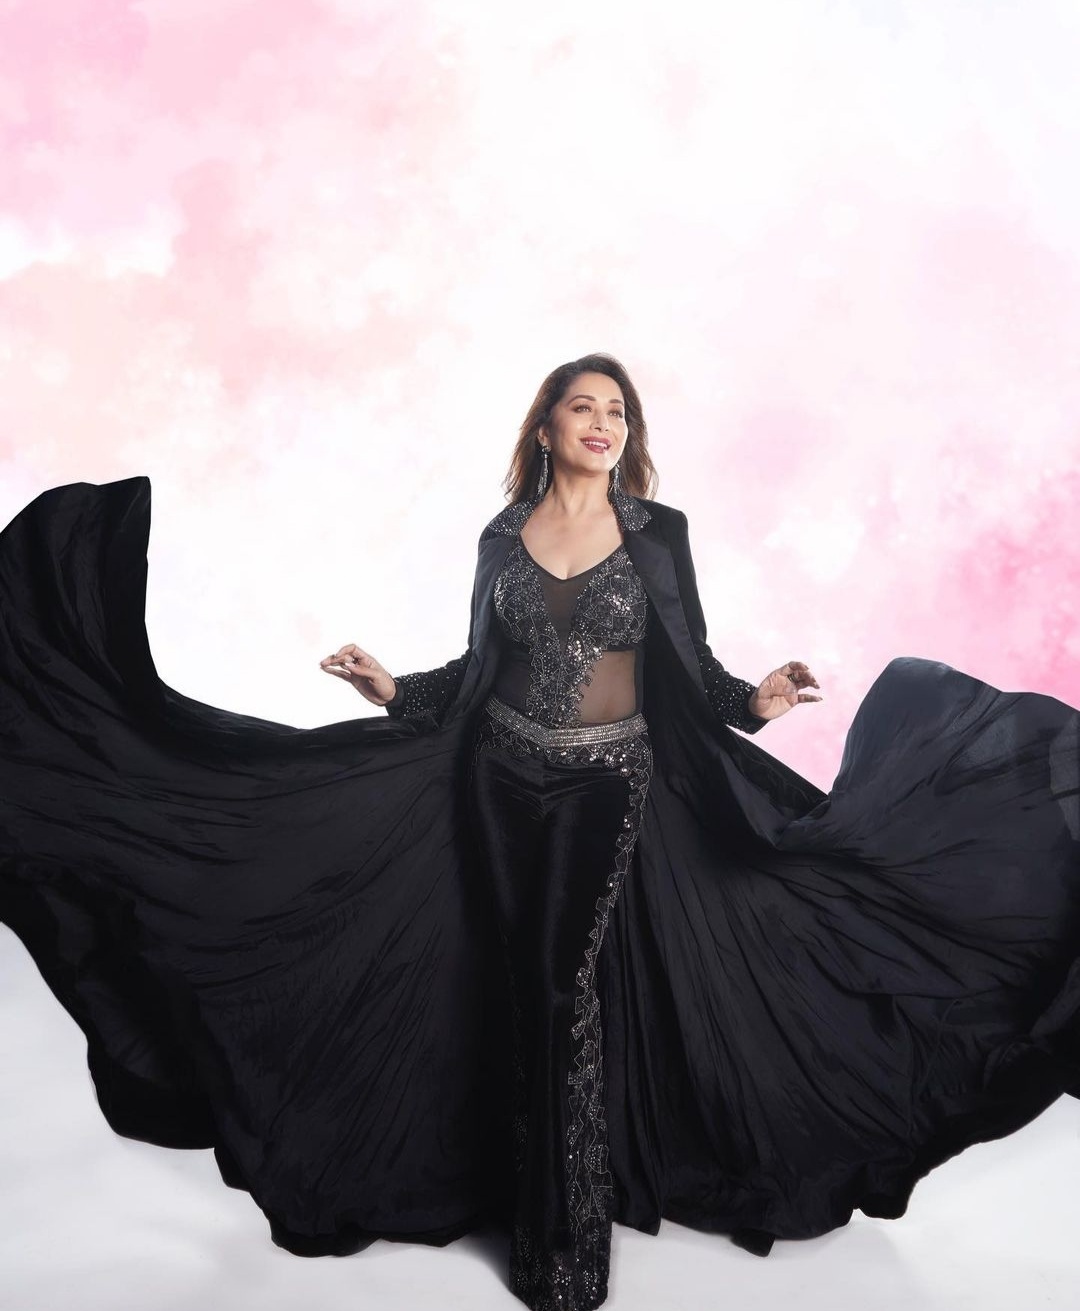 Madhuri Dixitxxx - Madhuri Dixit wows in black ensemble for her music video